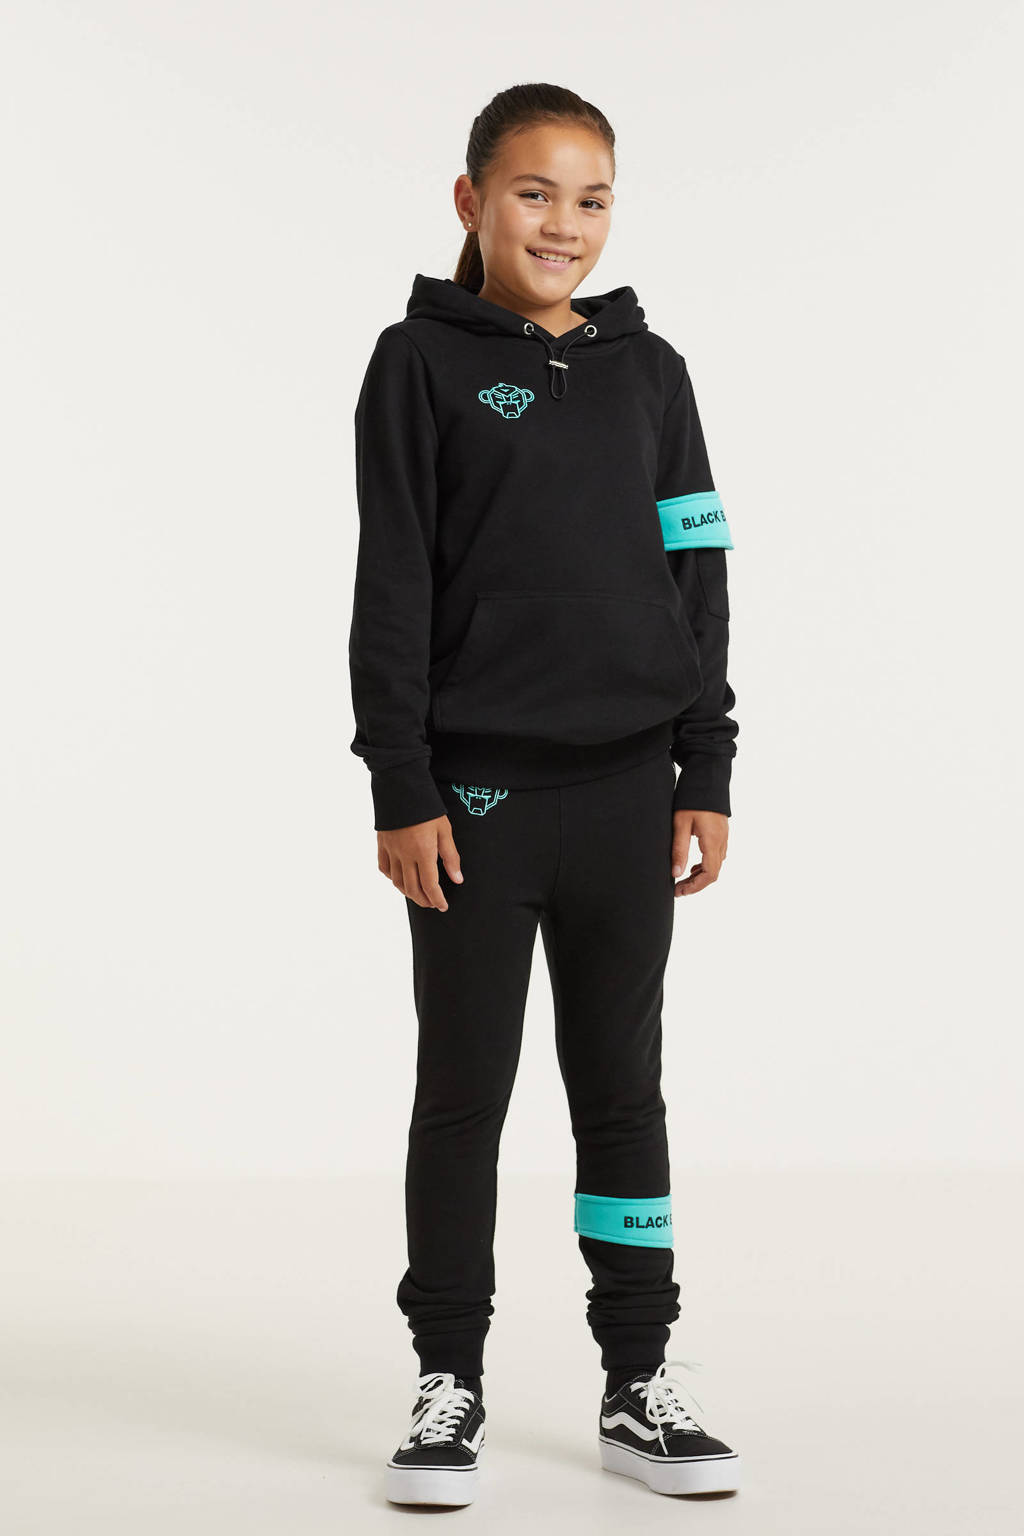 Zwart en aqua jongens en meisjes BLACK BANANAS unisex hoodie van sweat materiaal met logo dessin, lange mouwen en capuchon